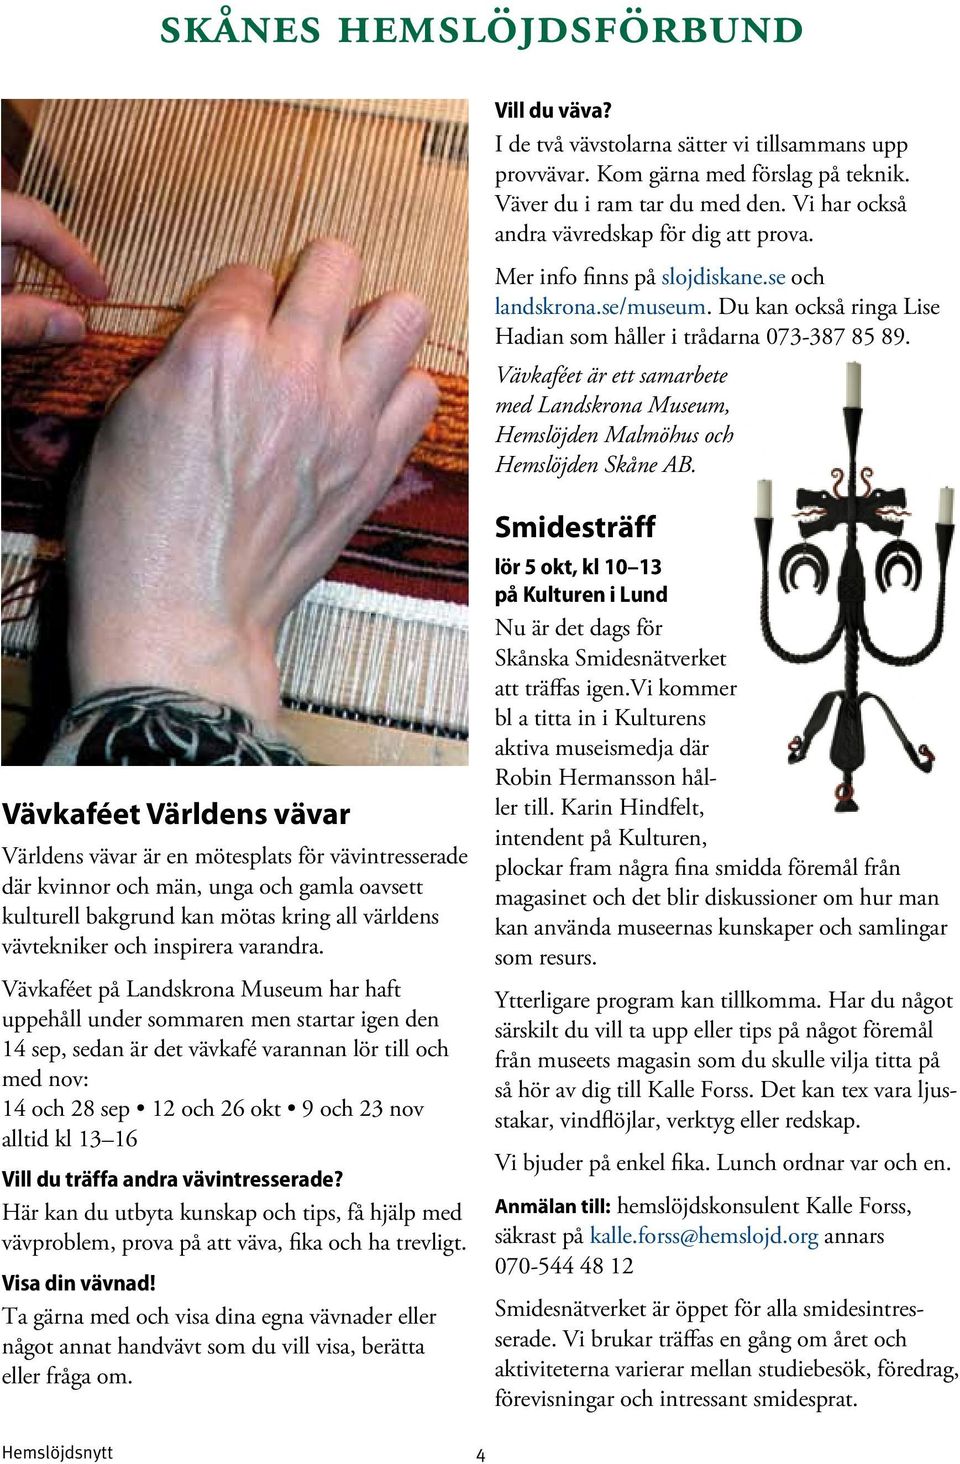 Vävkaféet är ett samarbete med Landskrona Museum, Hemslöjden Malmöhus och Hemslöjden Skåne AB.